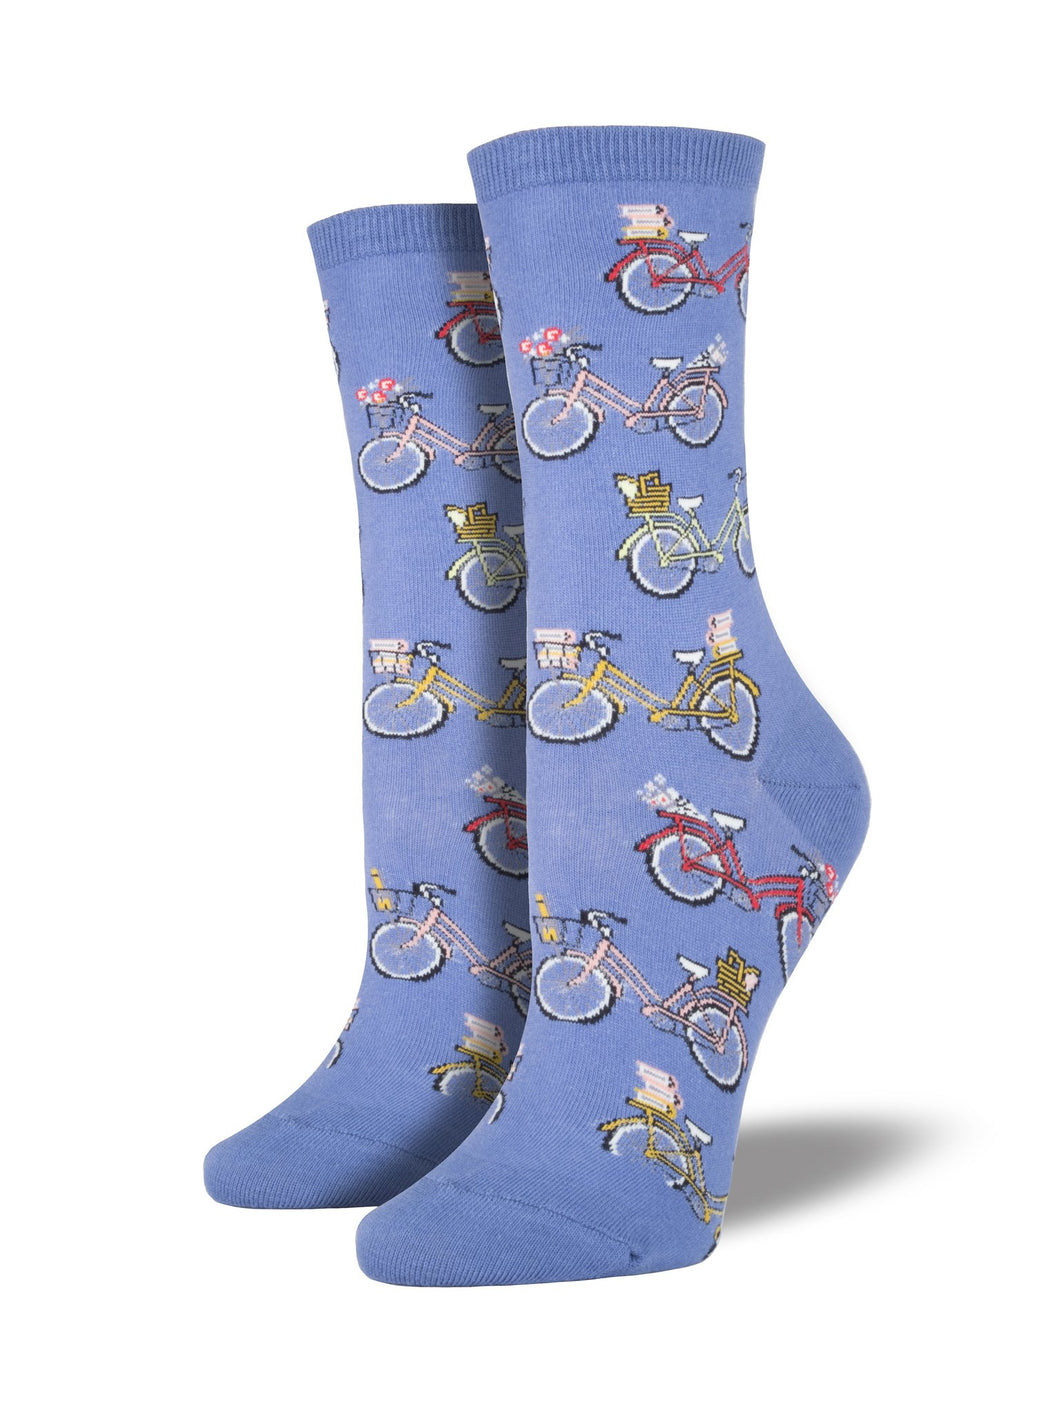 Vintage Bike - Ladies Crew Socks by Socksmith